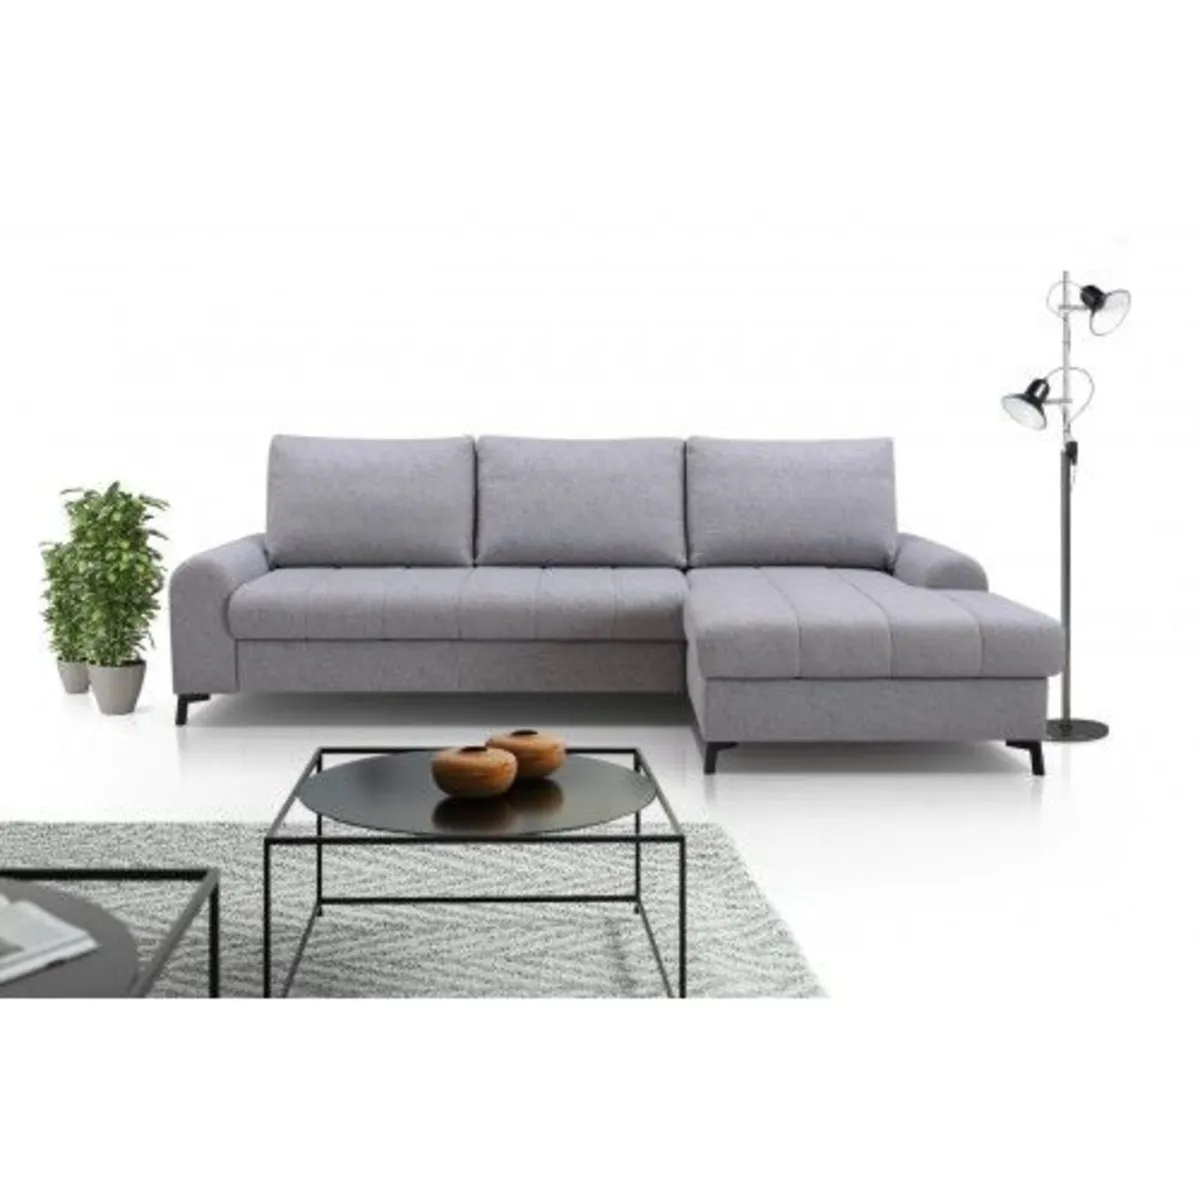 Corner sofa bed AKIRA 💓💓💓💓💓 - Image 1